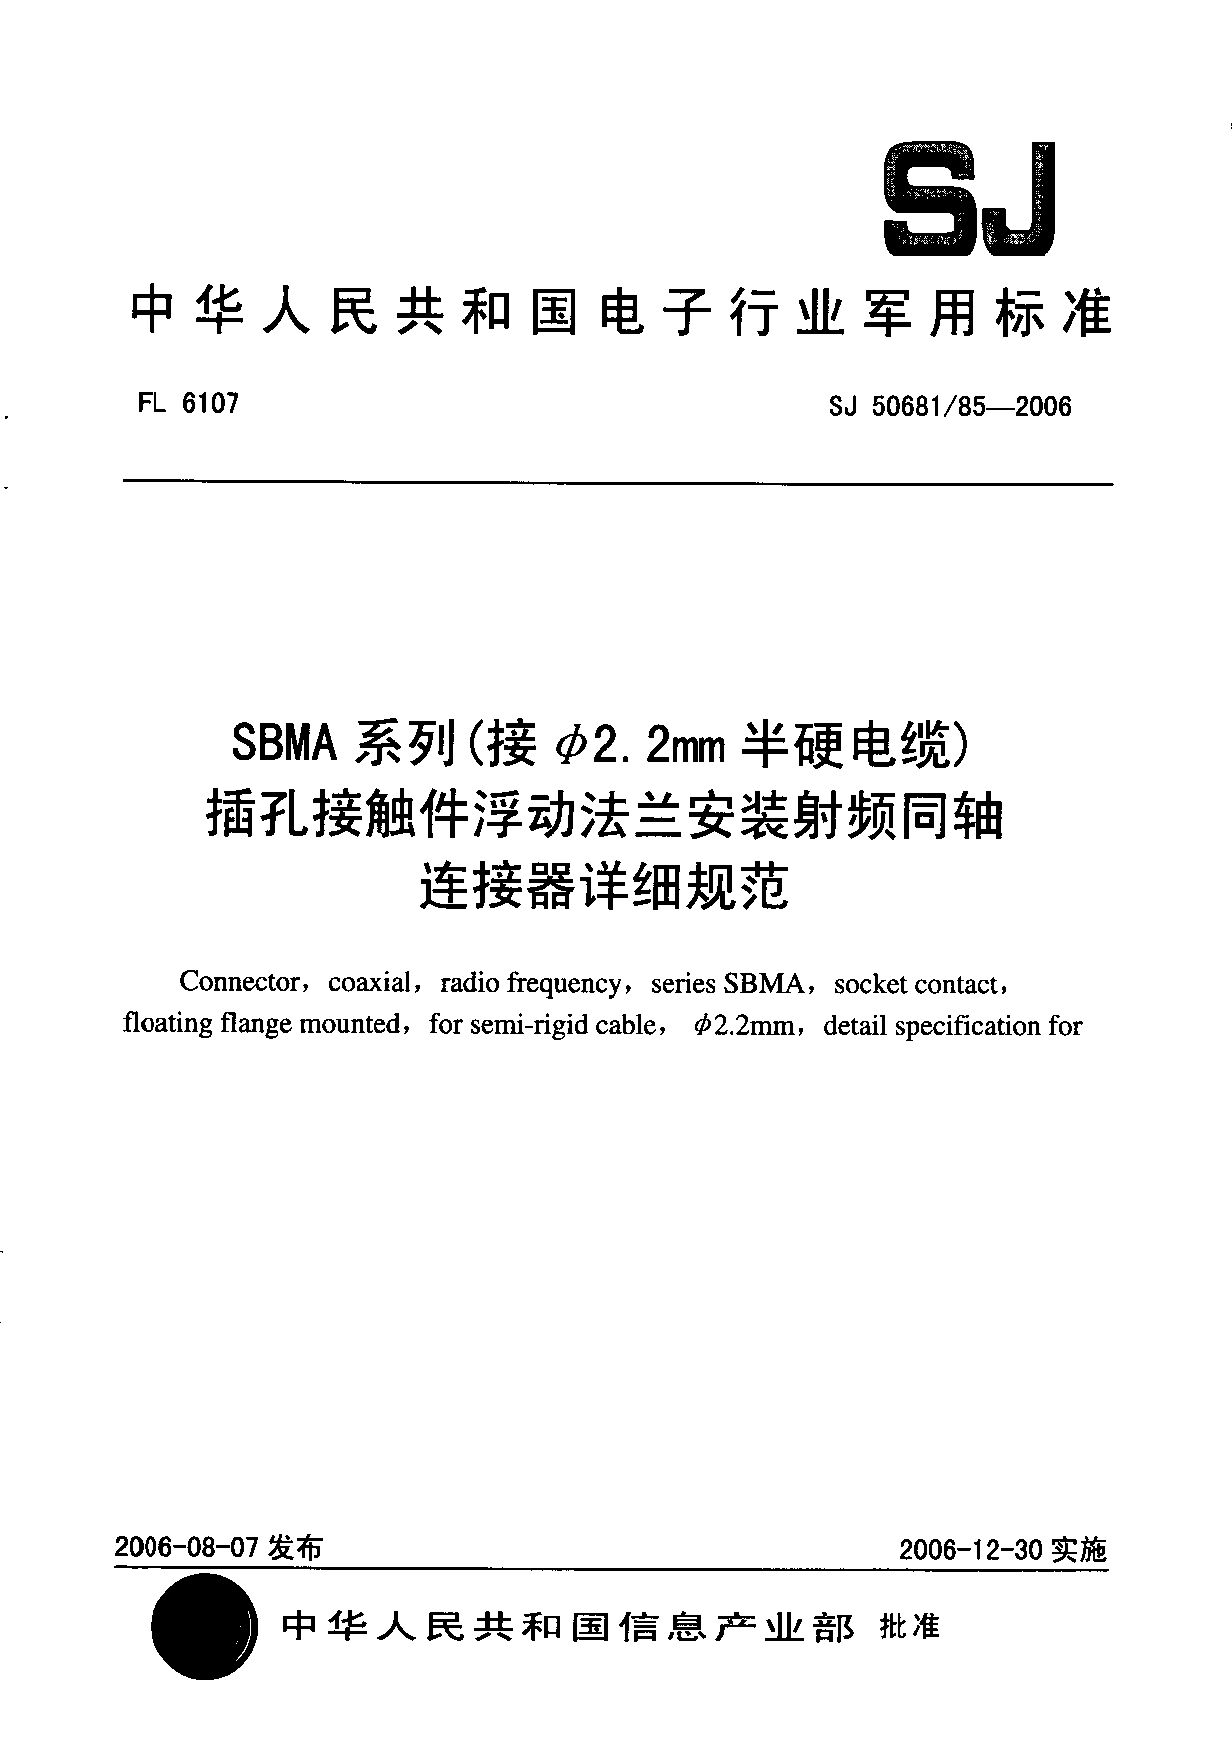 SJ 50681/85-2006封面图